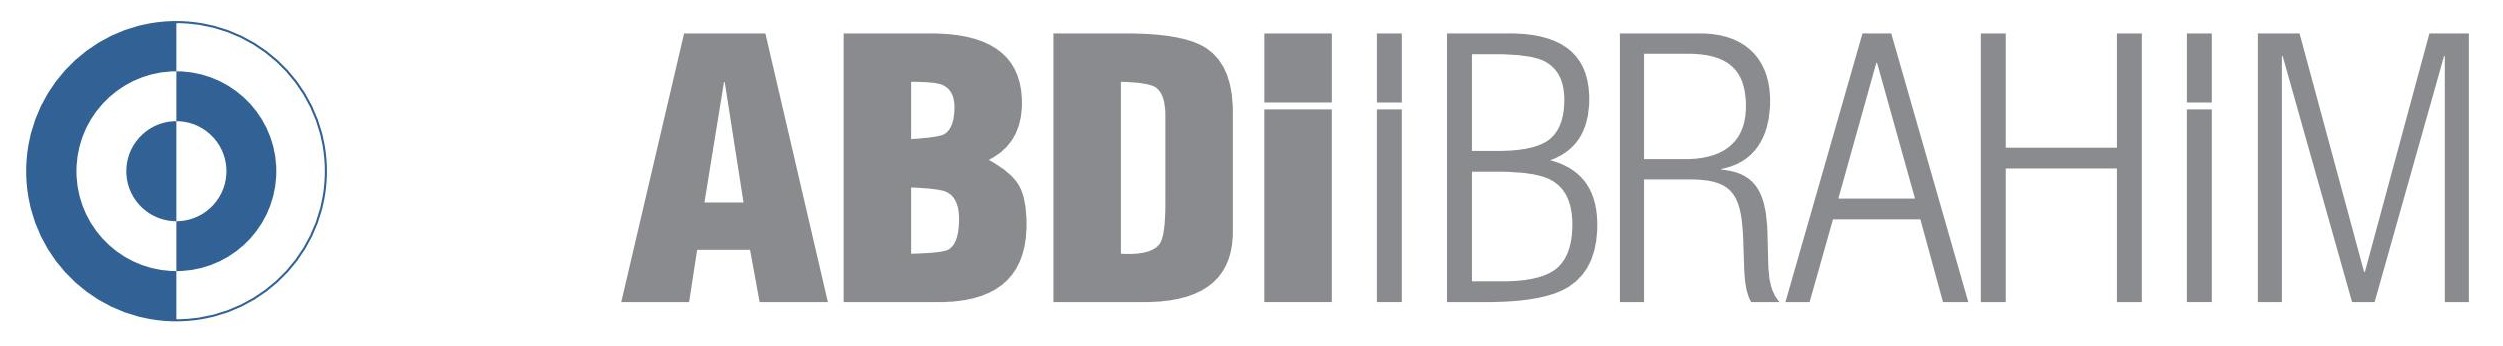 Abdi Ibrahim Logo - Abdi Ibrahim Vector, Transparent background PNG HD thumbnail